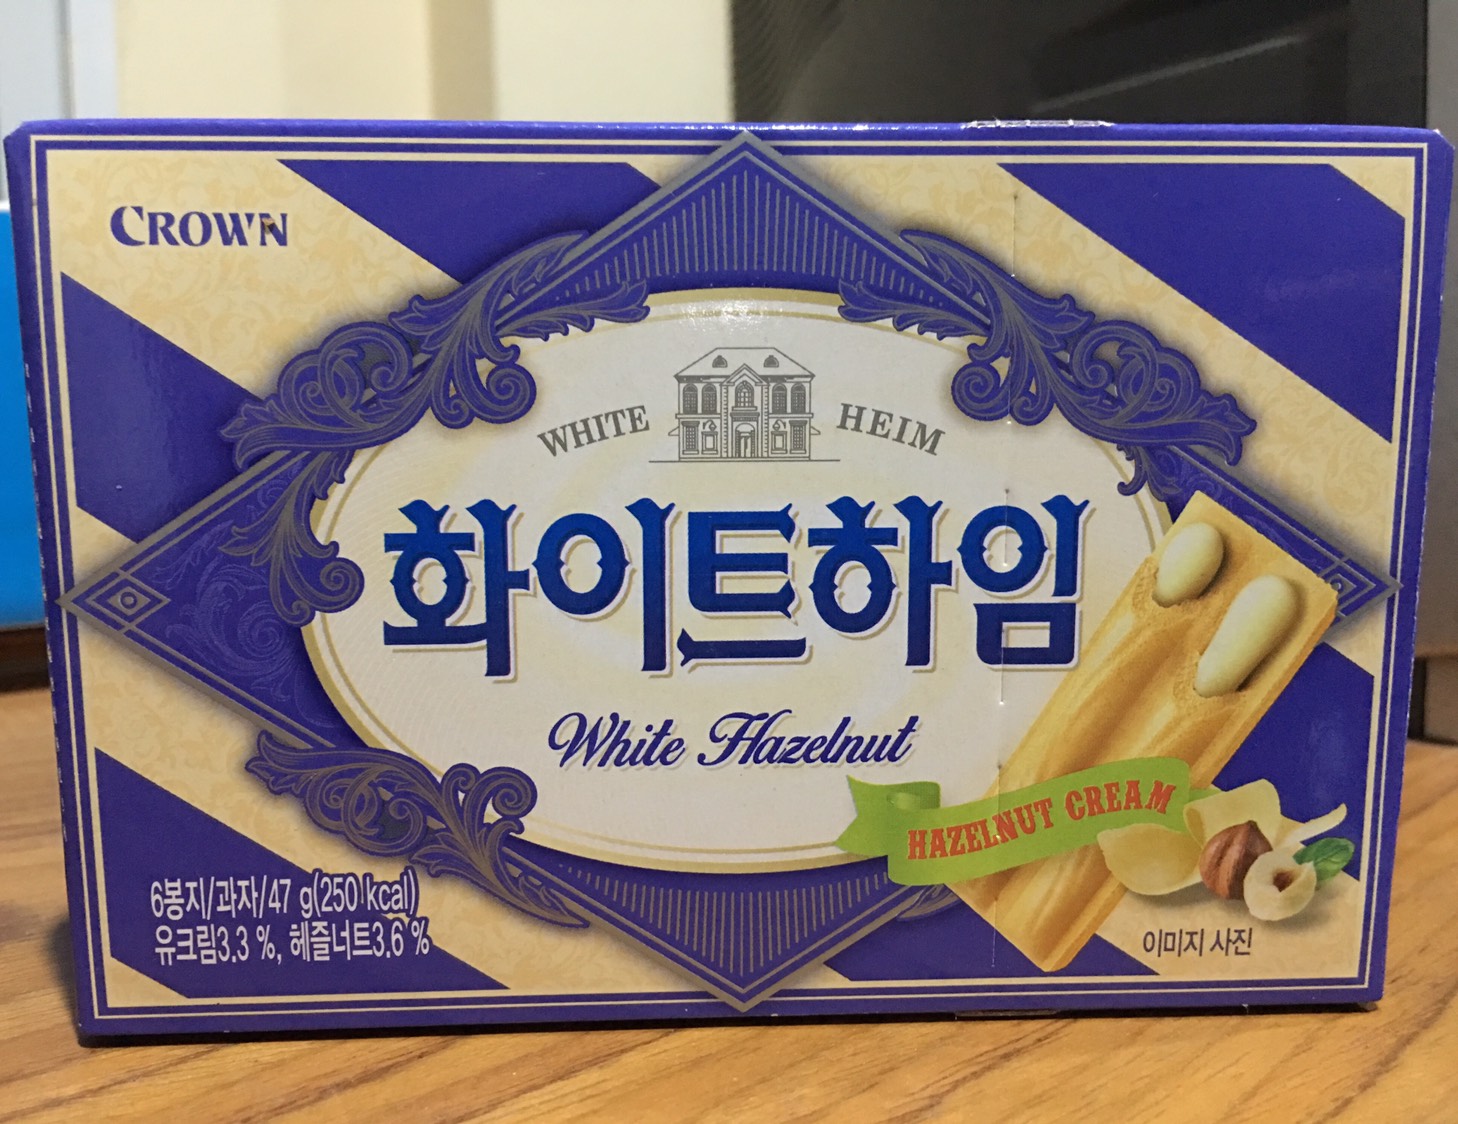 ขนมเกาหลี เวเฟอร์เกาหลี Crown สอดไส้ รสไวท์ช็อกโกแลต ฮาเซลนัท ม่วง ( White Hazelnut Wafer with Hazelnut cream) / ช็อคโกแลต (น้ำตาล) Choco- Hazelnut  1 กล่อง 47 กรัม 250 Kcal